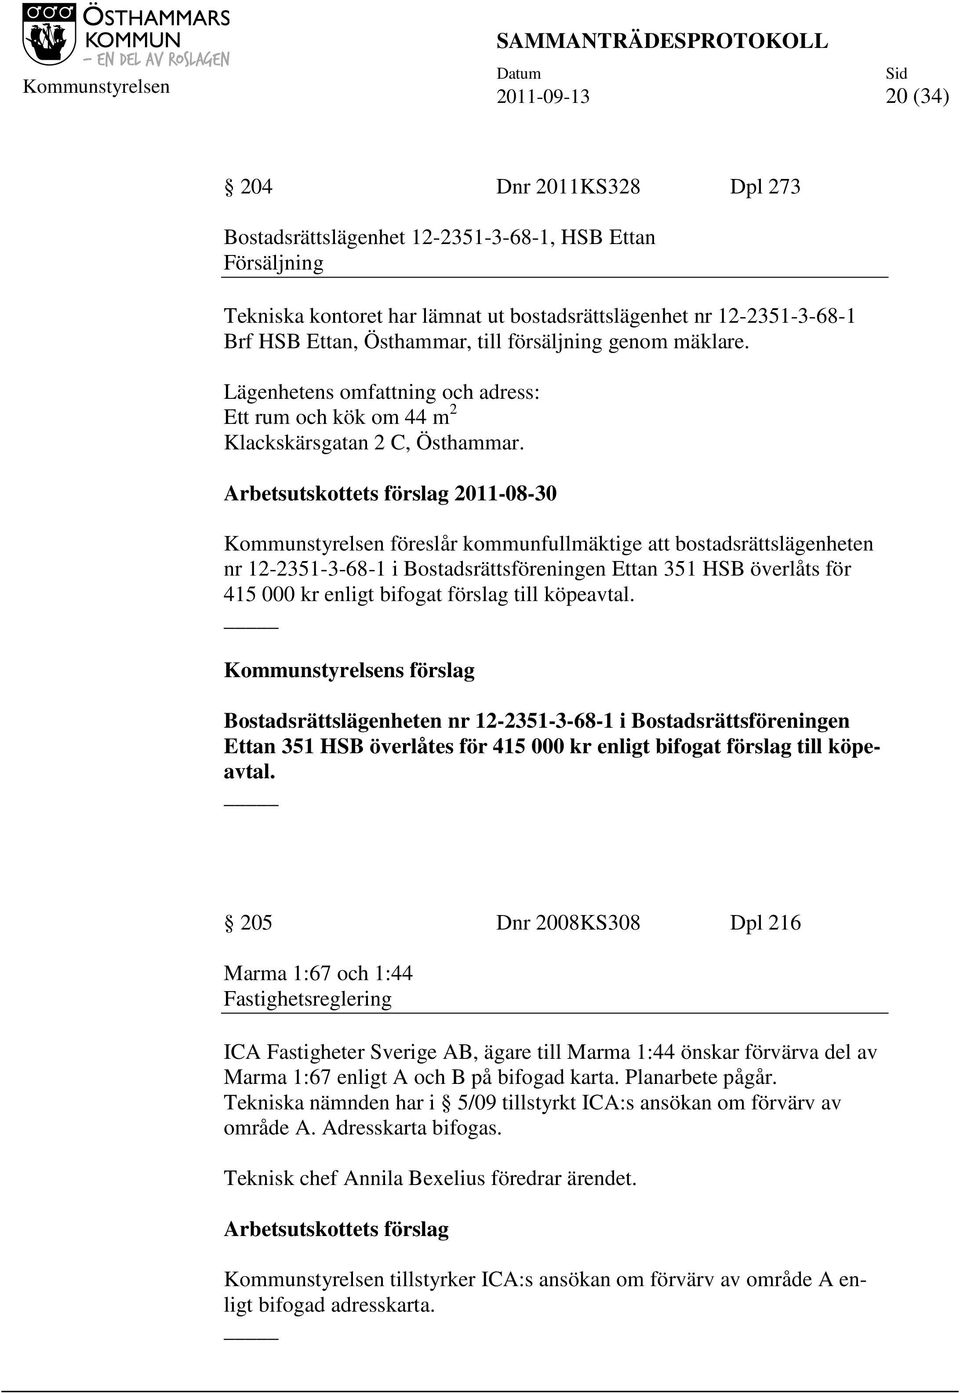 Arbetsutskottets förslag 2011-08-30 Kommunstyrelsen föreslår kommunfullmäktige att bostadsrättslägenheten nr 12-2351-3-68-1 i Bostadsrättsföreningen Ettan 351 HSB överlåts för 415 000 kr enligt